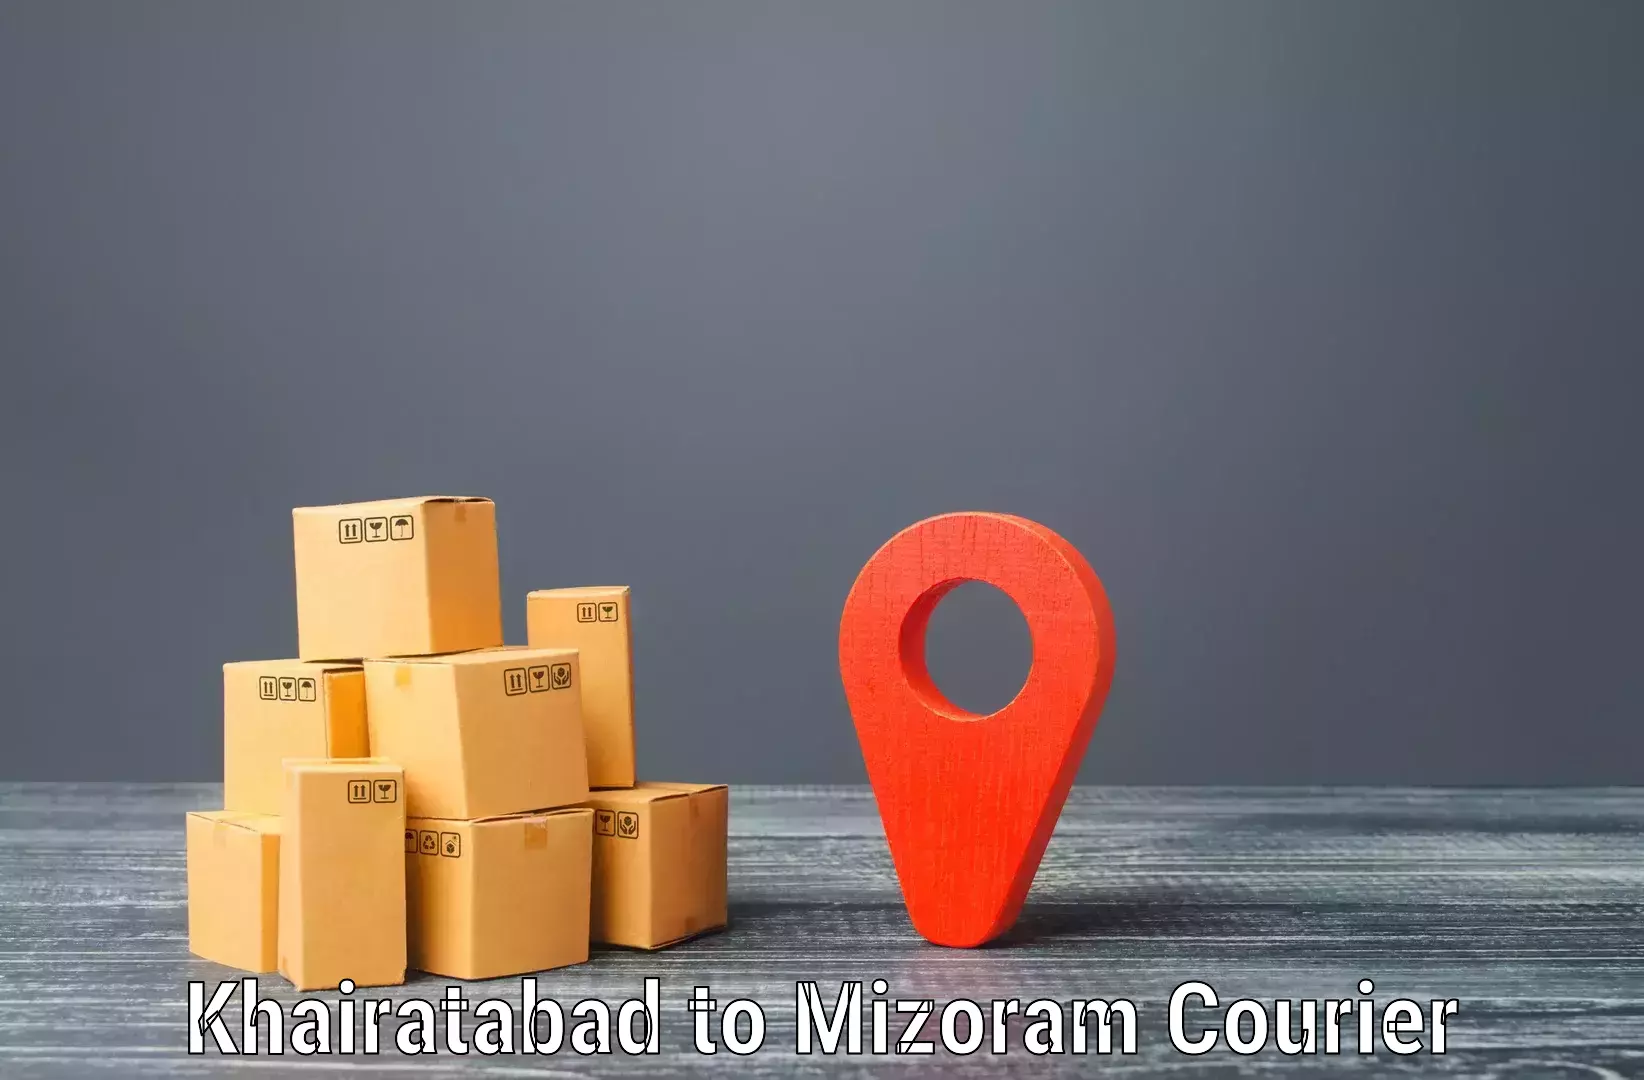 Custom logistics solutions Khairatabad to Khawzawl